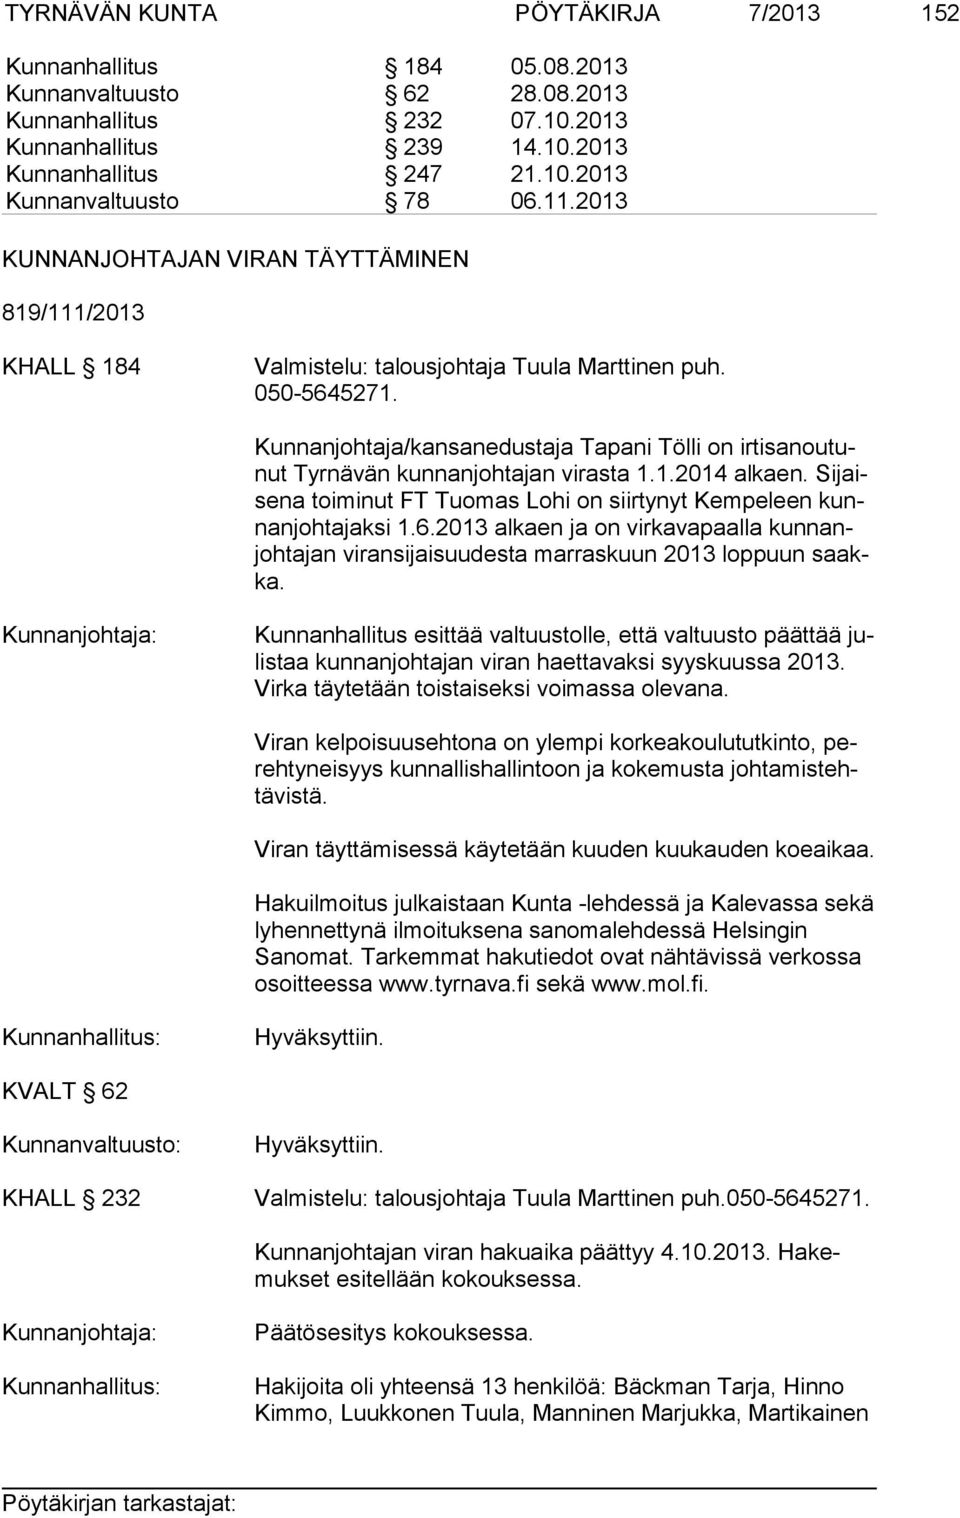 Kunnanjohtaja/kansanedustaja Tapani Tölli on ir ti sa nou tunut Tyrnävän kunnanjohtajan virasta 1.1.2014 alkaen. Si jaise na toiminut FT Tuomas Lohi on siirtynyt Kempeleen kunnan joh ta jak si 1.6.